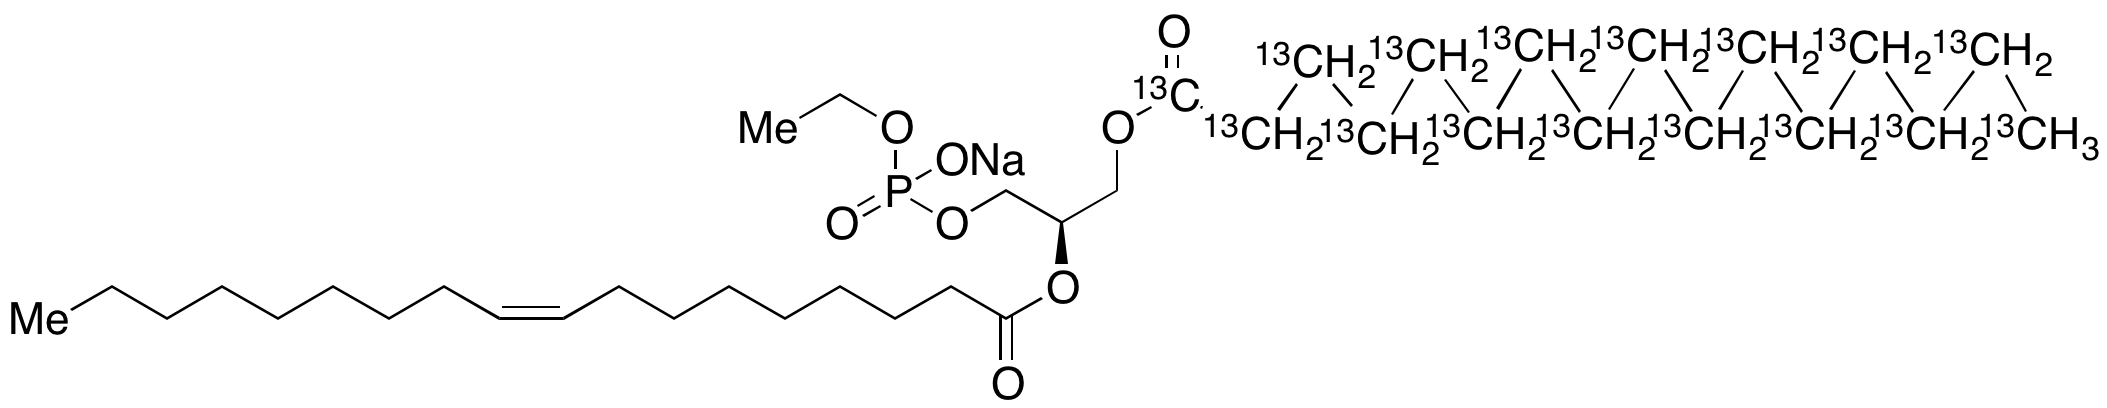 1-Palmitoyl-(13C16)-2-oleoyl-sn-glycero-3-phosphoethanol Sodium Salt